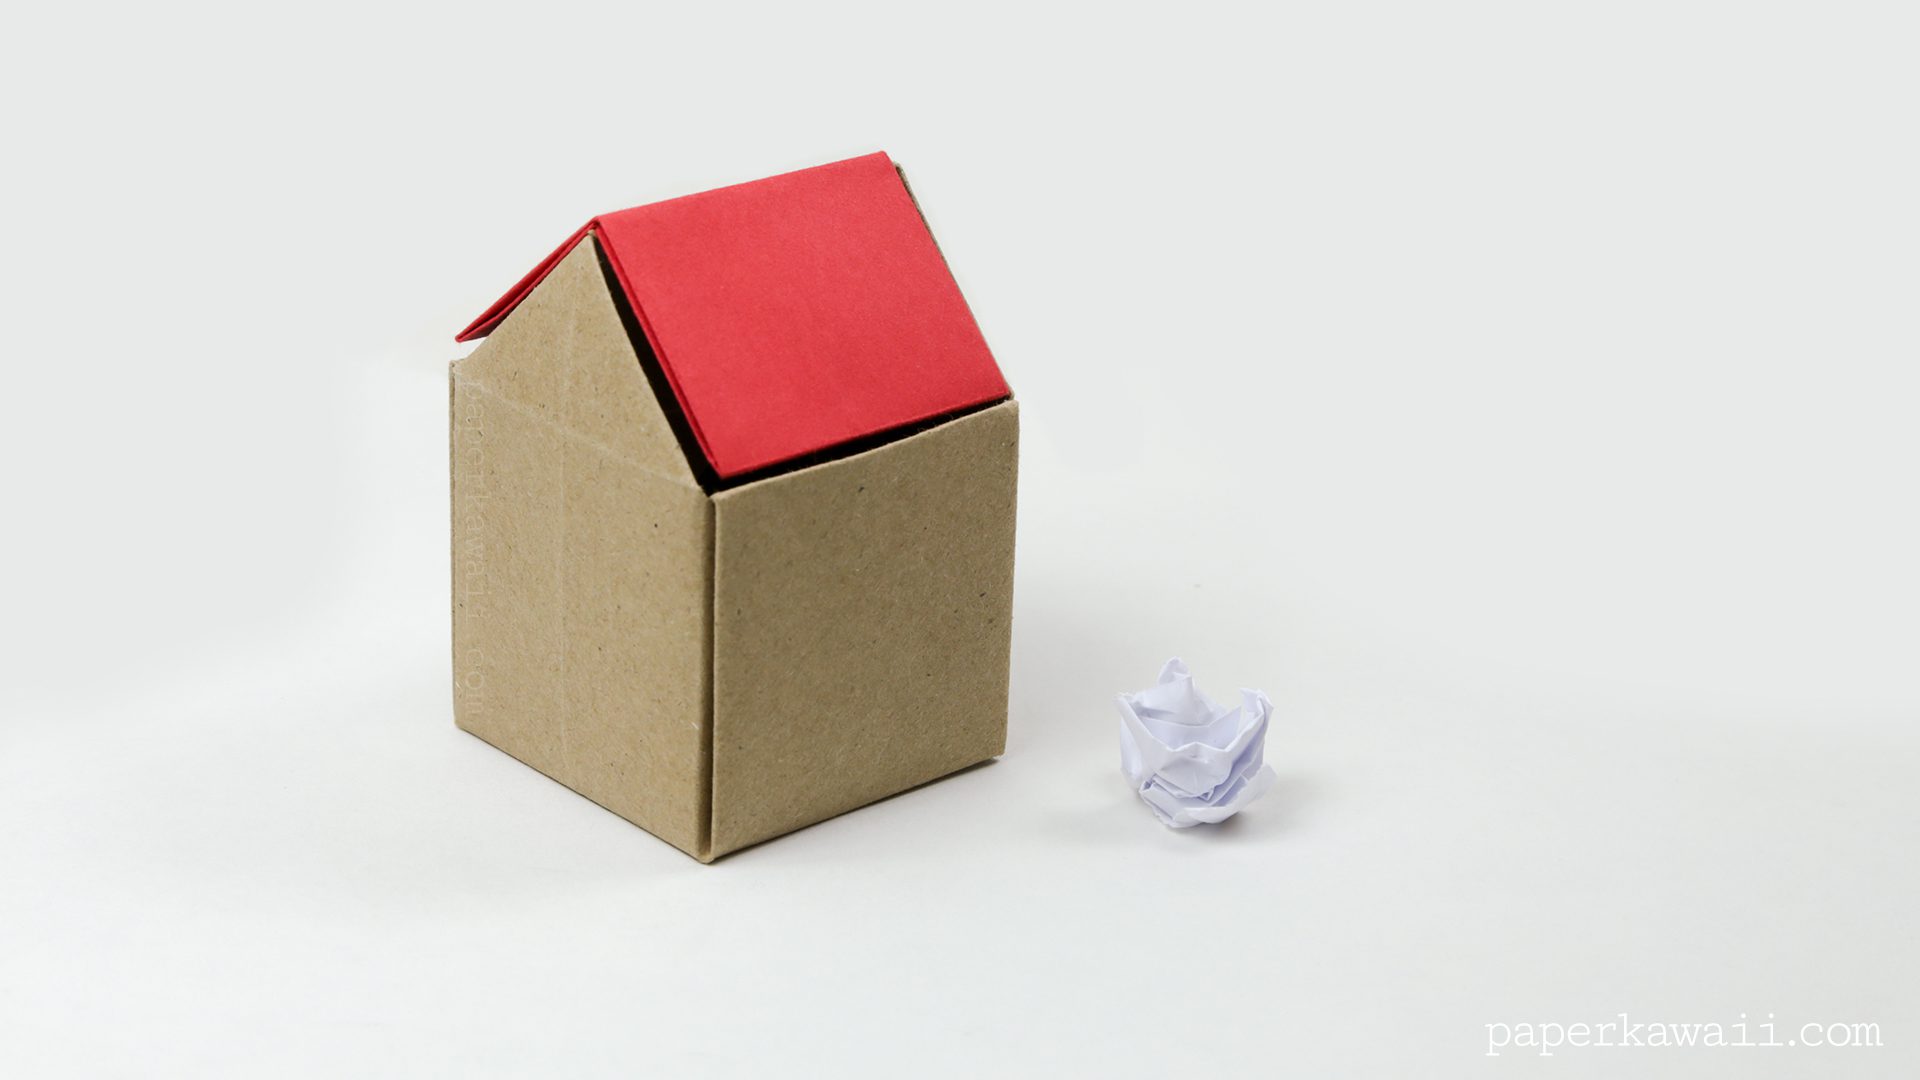 origami rubbish bin instructions #origami #rubbish #trash #diy